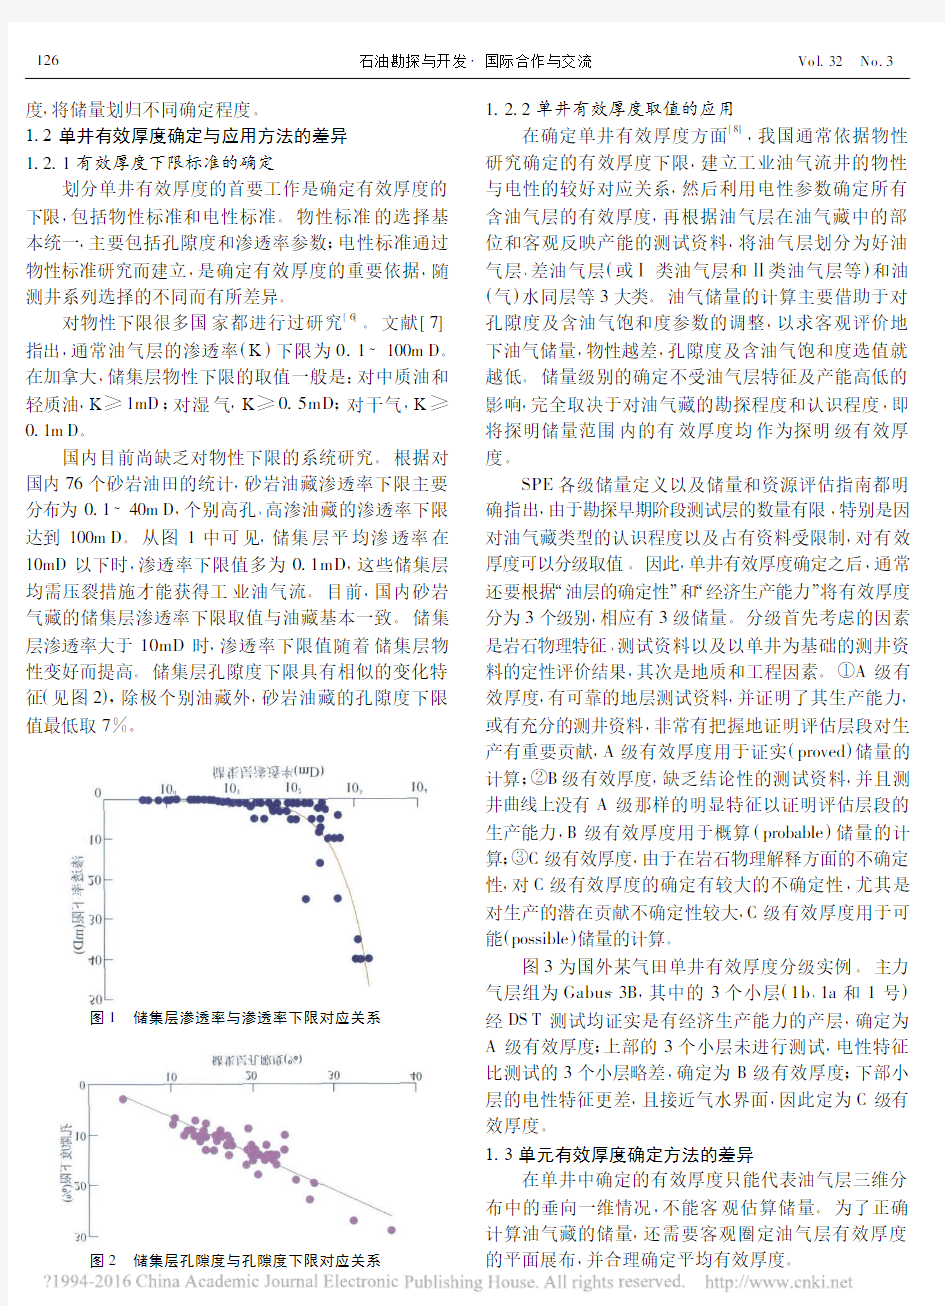 浅析中国与西方在储量计算中确定有效厚度之差异_赵文智